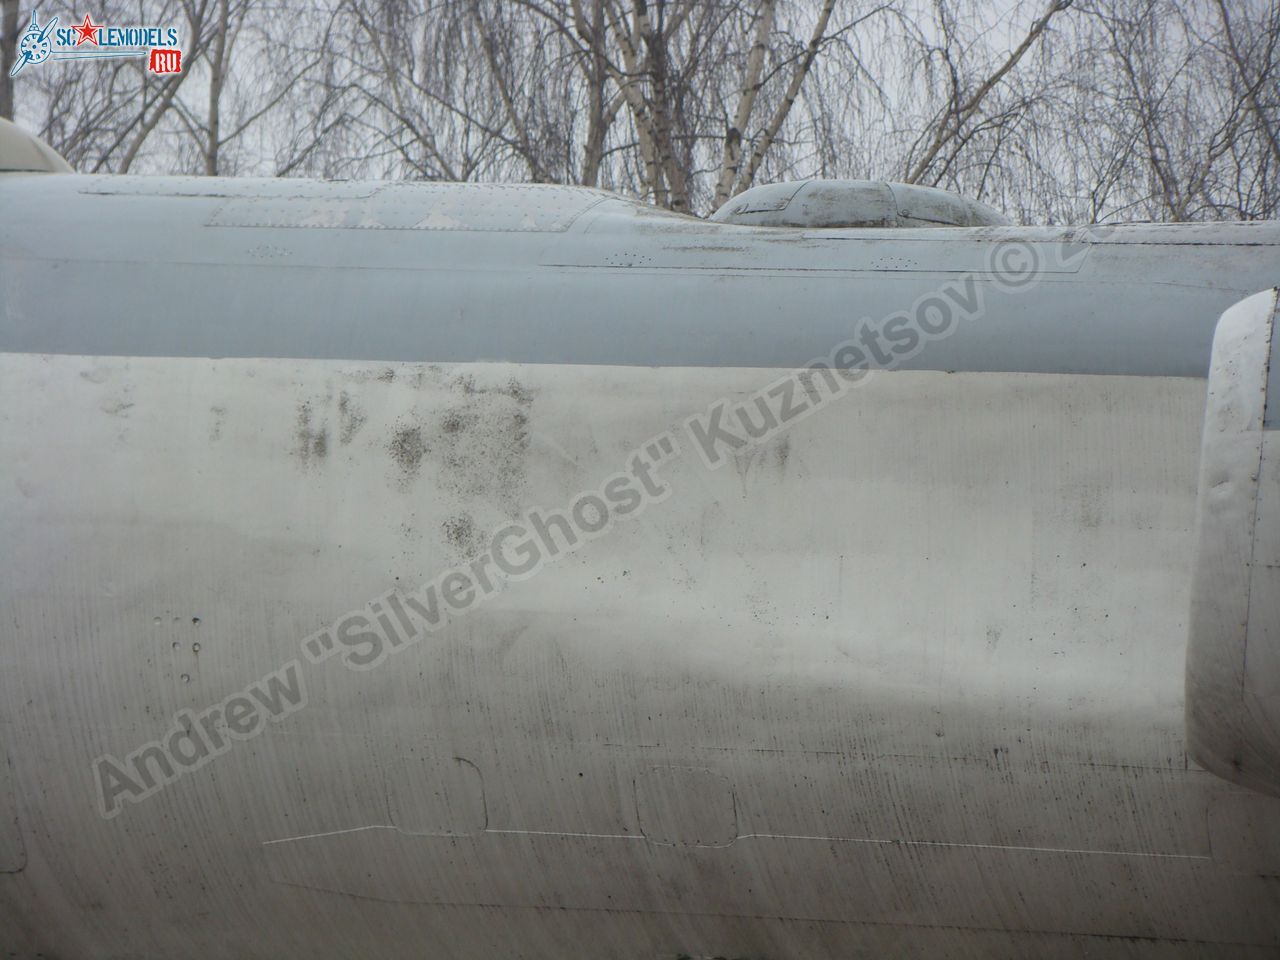 Tu-16_Badger_Smolensk_0036.jpg